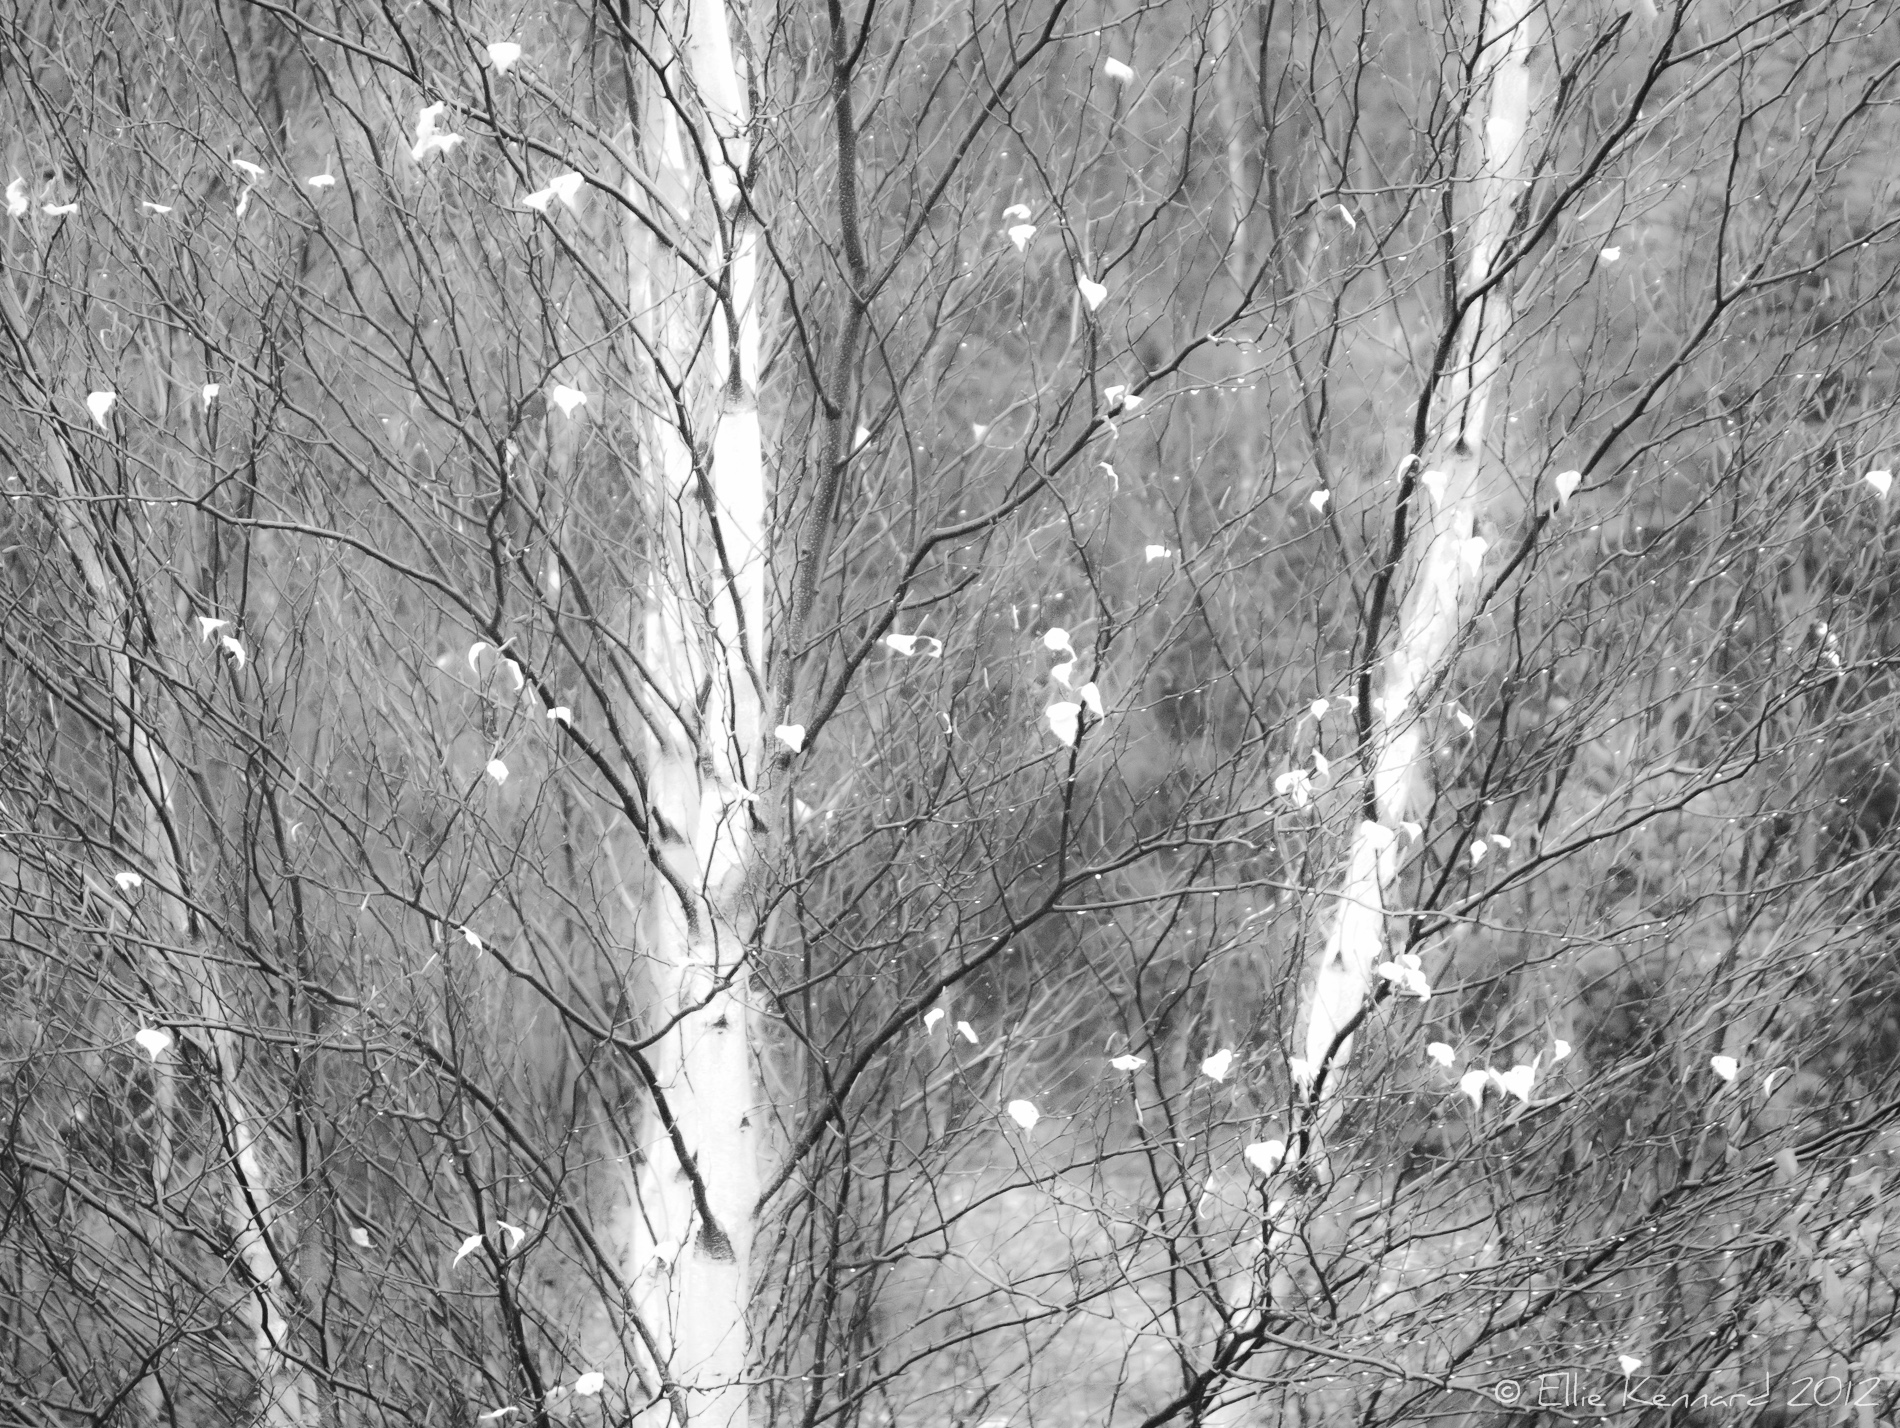 Rainy Birches - Ellie Kennard 2012